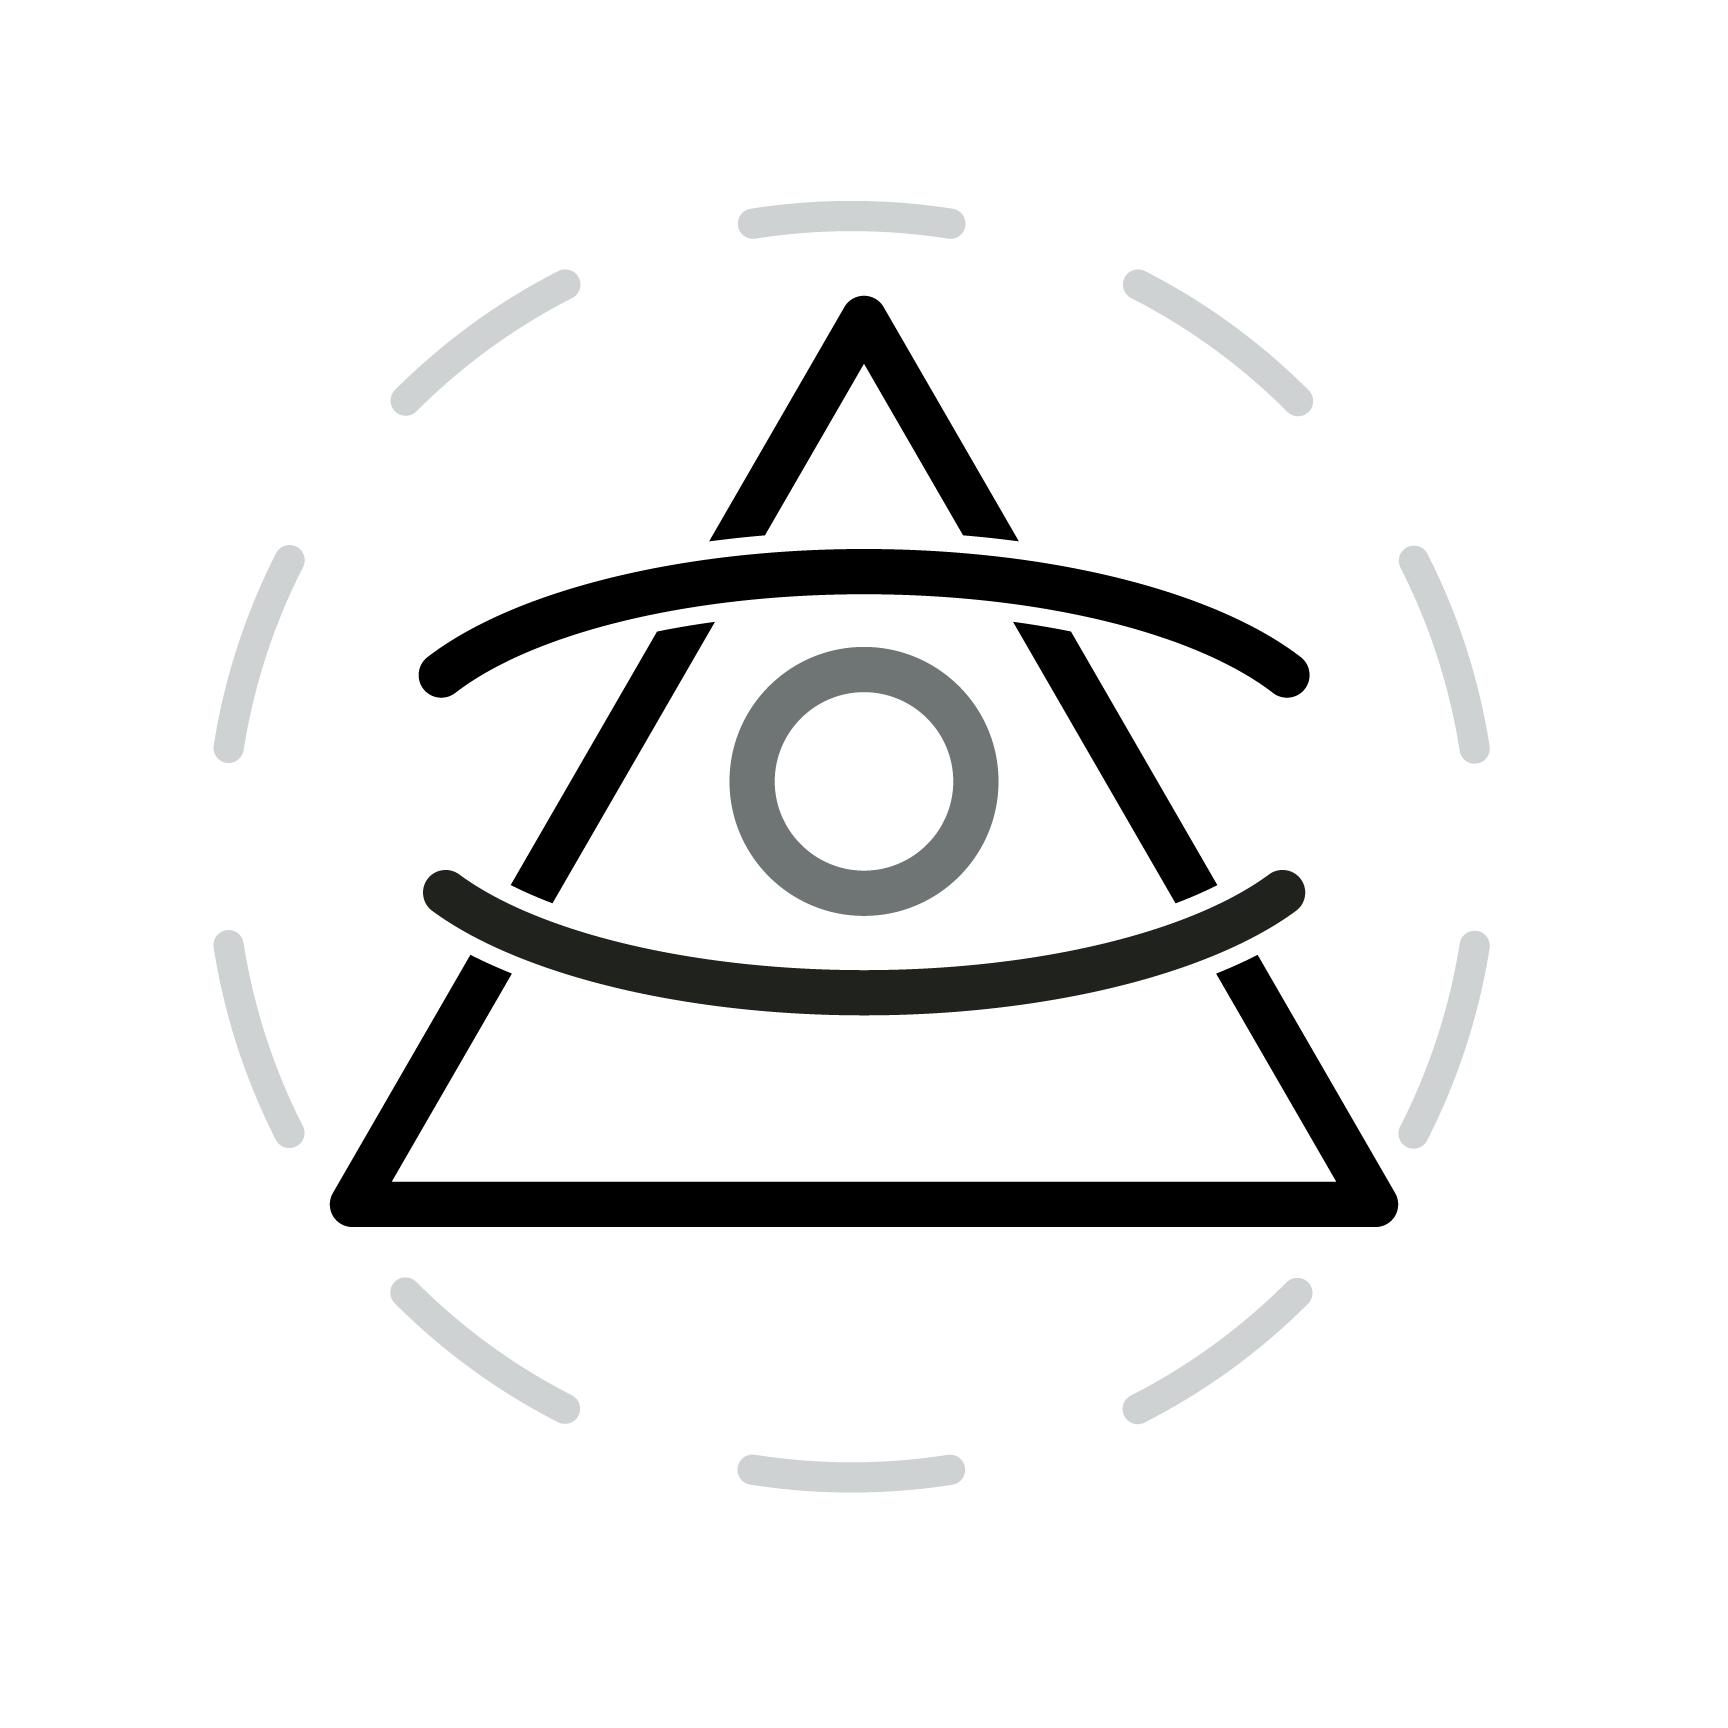 Illuminati Logo - Illuminati Logo. Download Vector Royalty Free Art